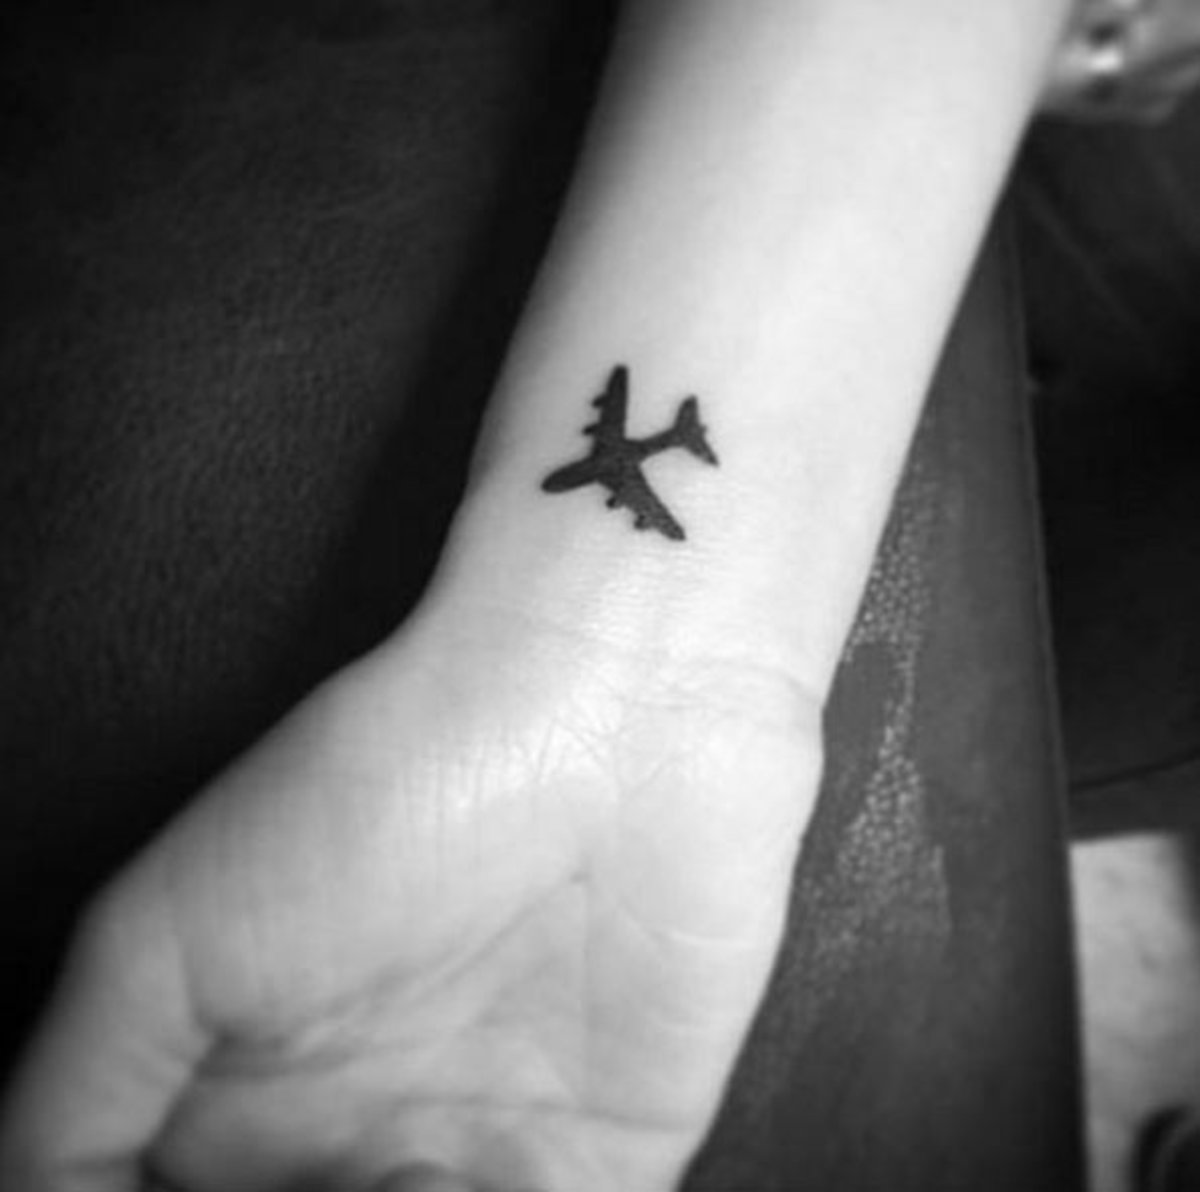 Plane Temporary Tattoo Small Temporary Tattoo Travel Temporary Tattoos Airplane  Tattoo Wanderlust Tattoo Traveler Gift Gift - Etsy